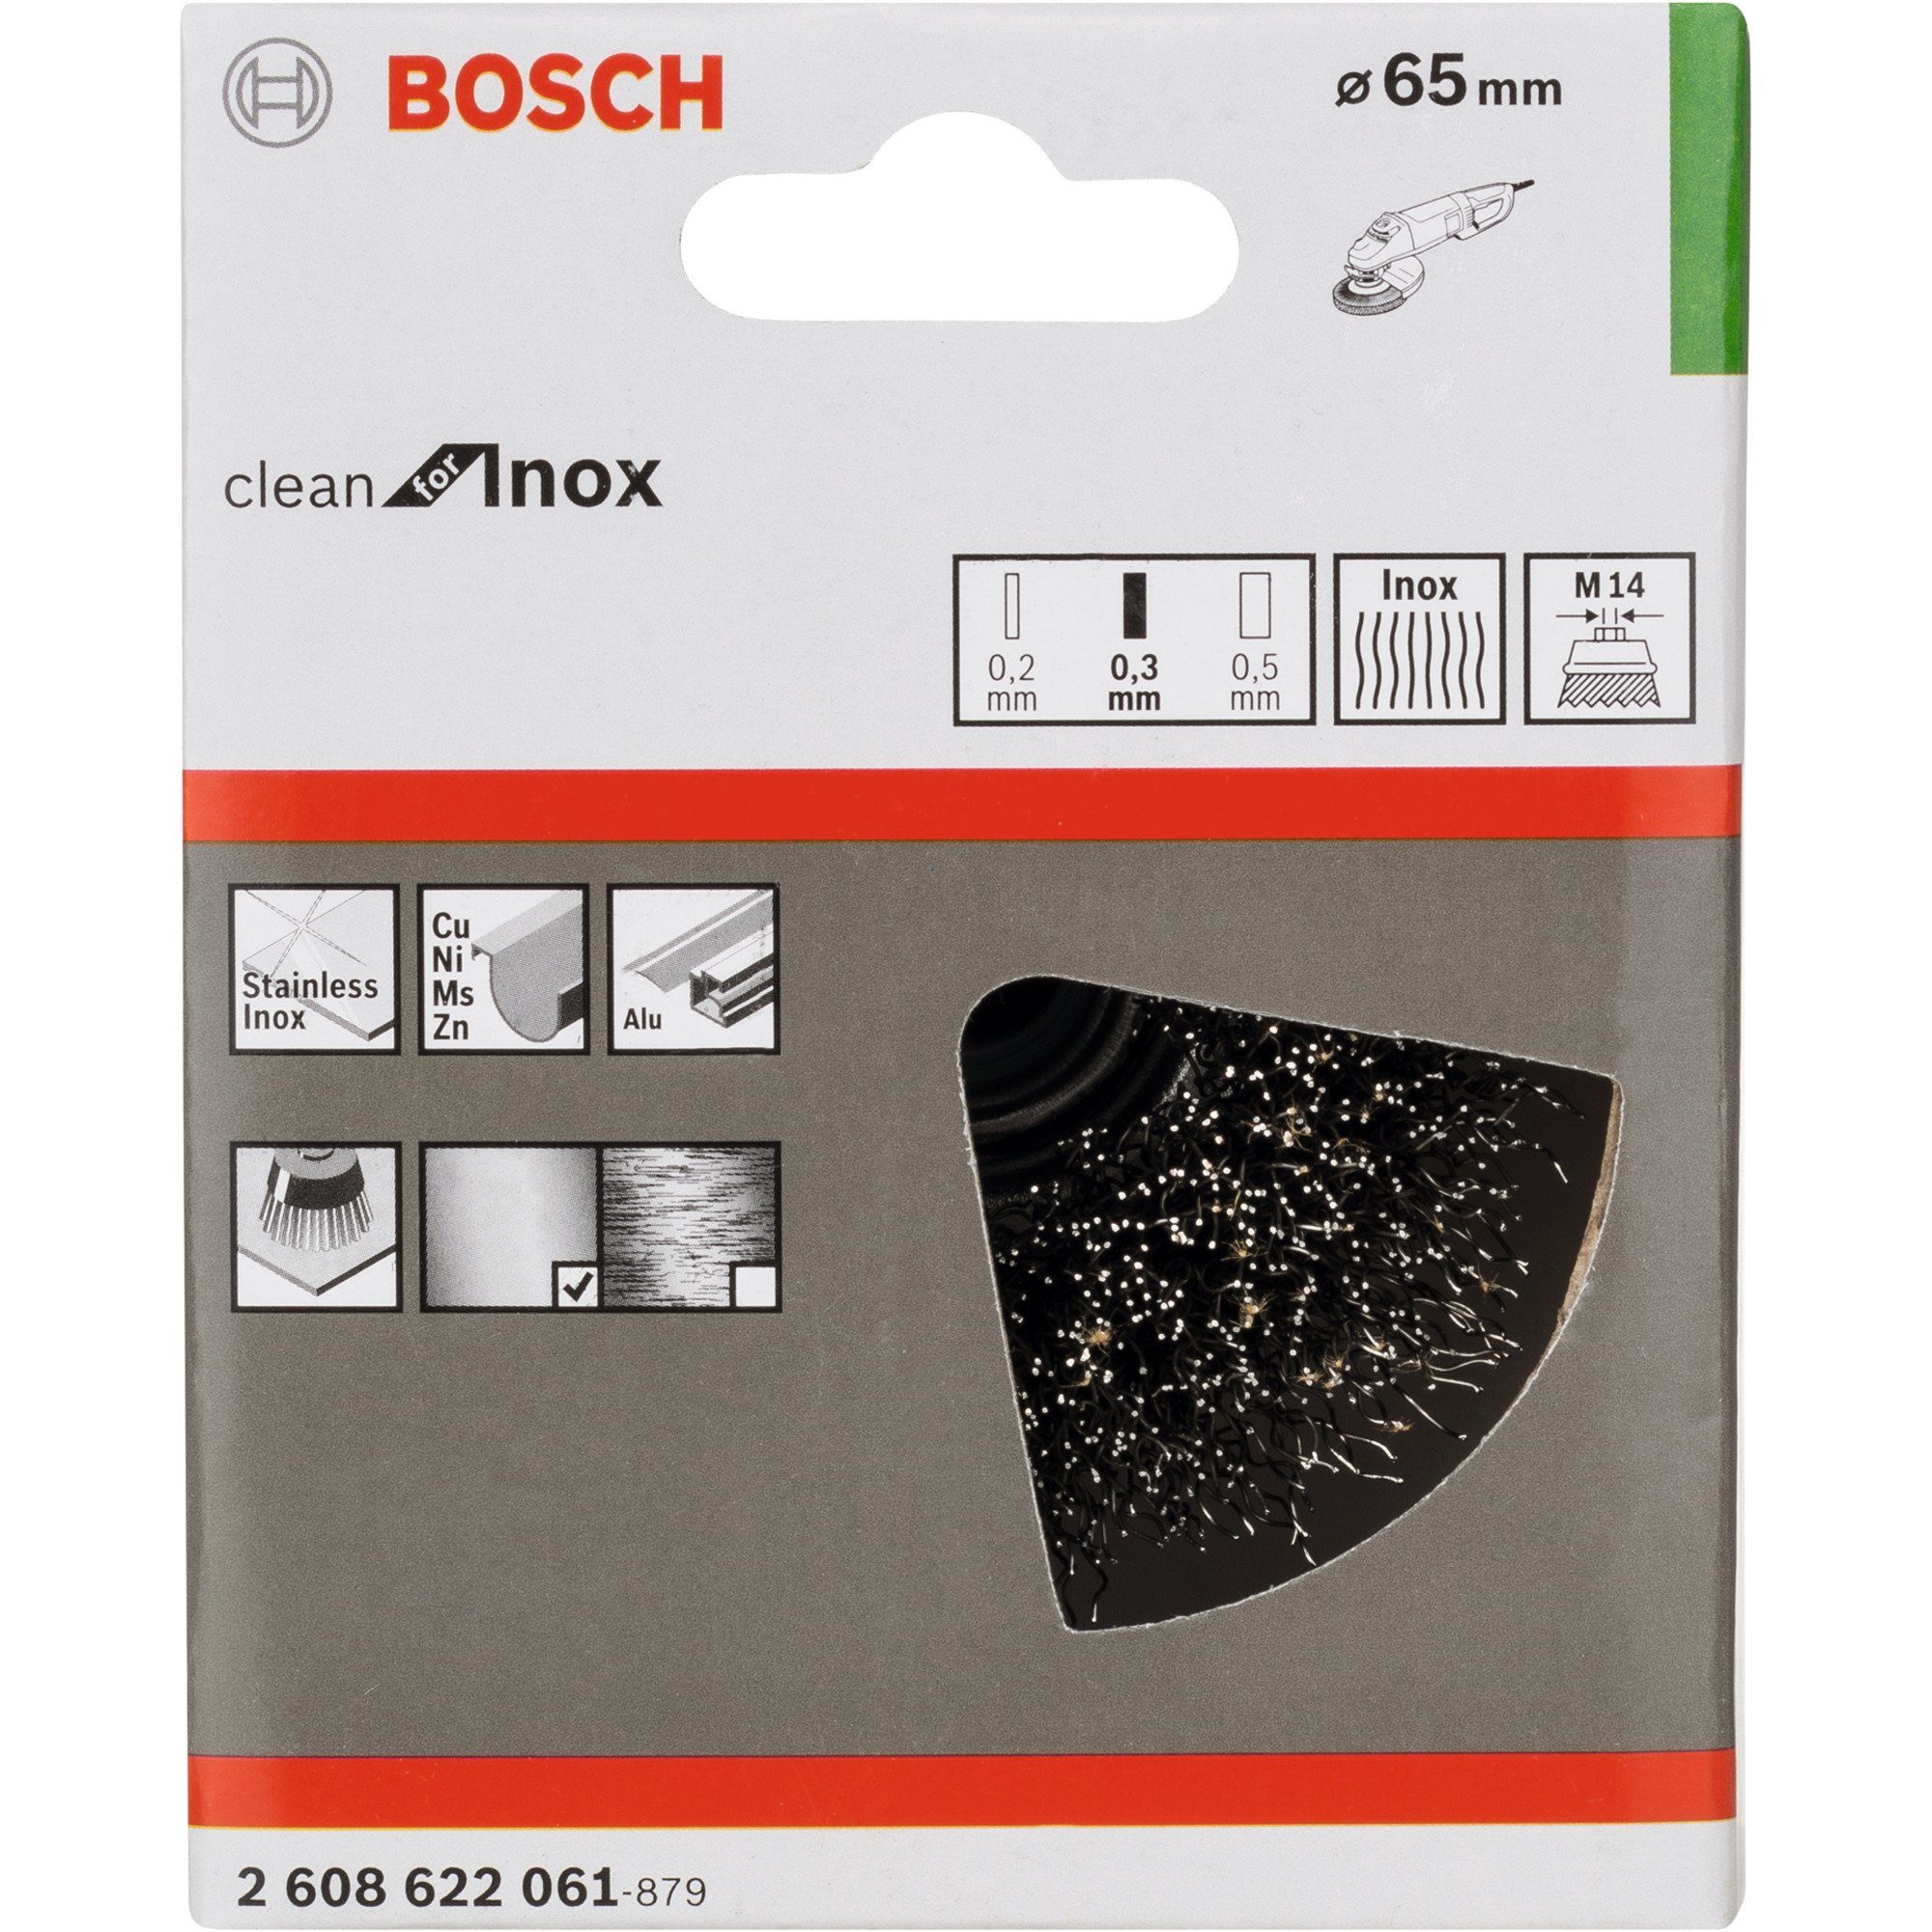 BOSCH Schleifscheibe Bosch Professional Topfbürste for Clean Inox, Ø